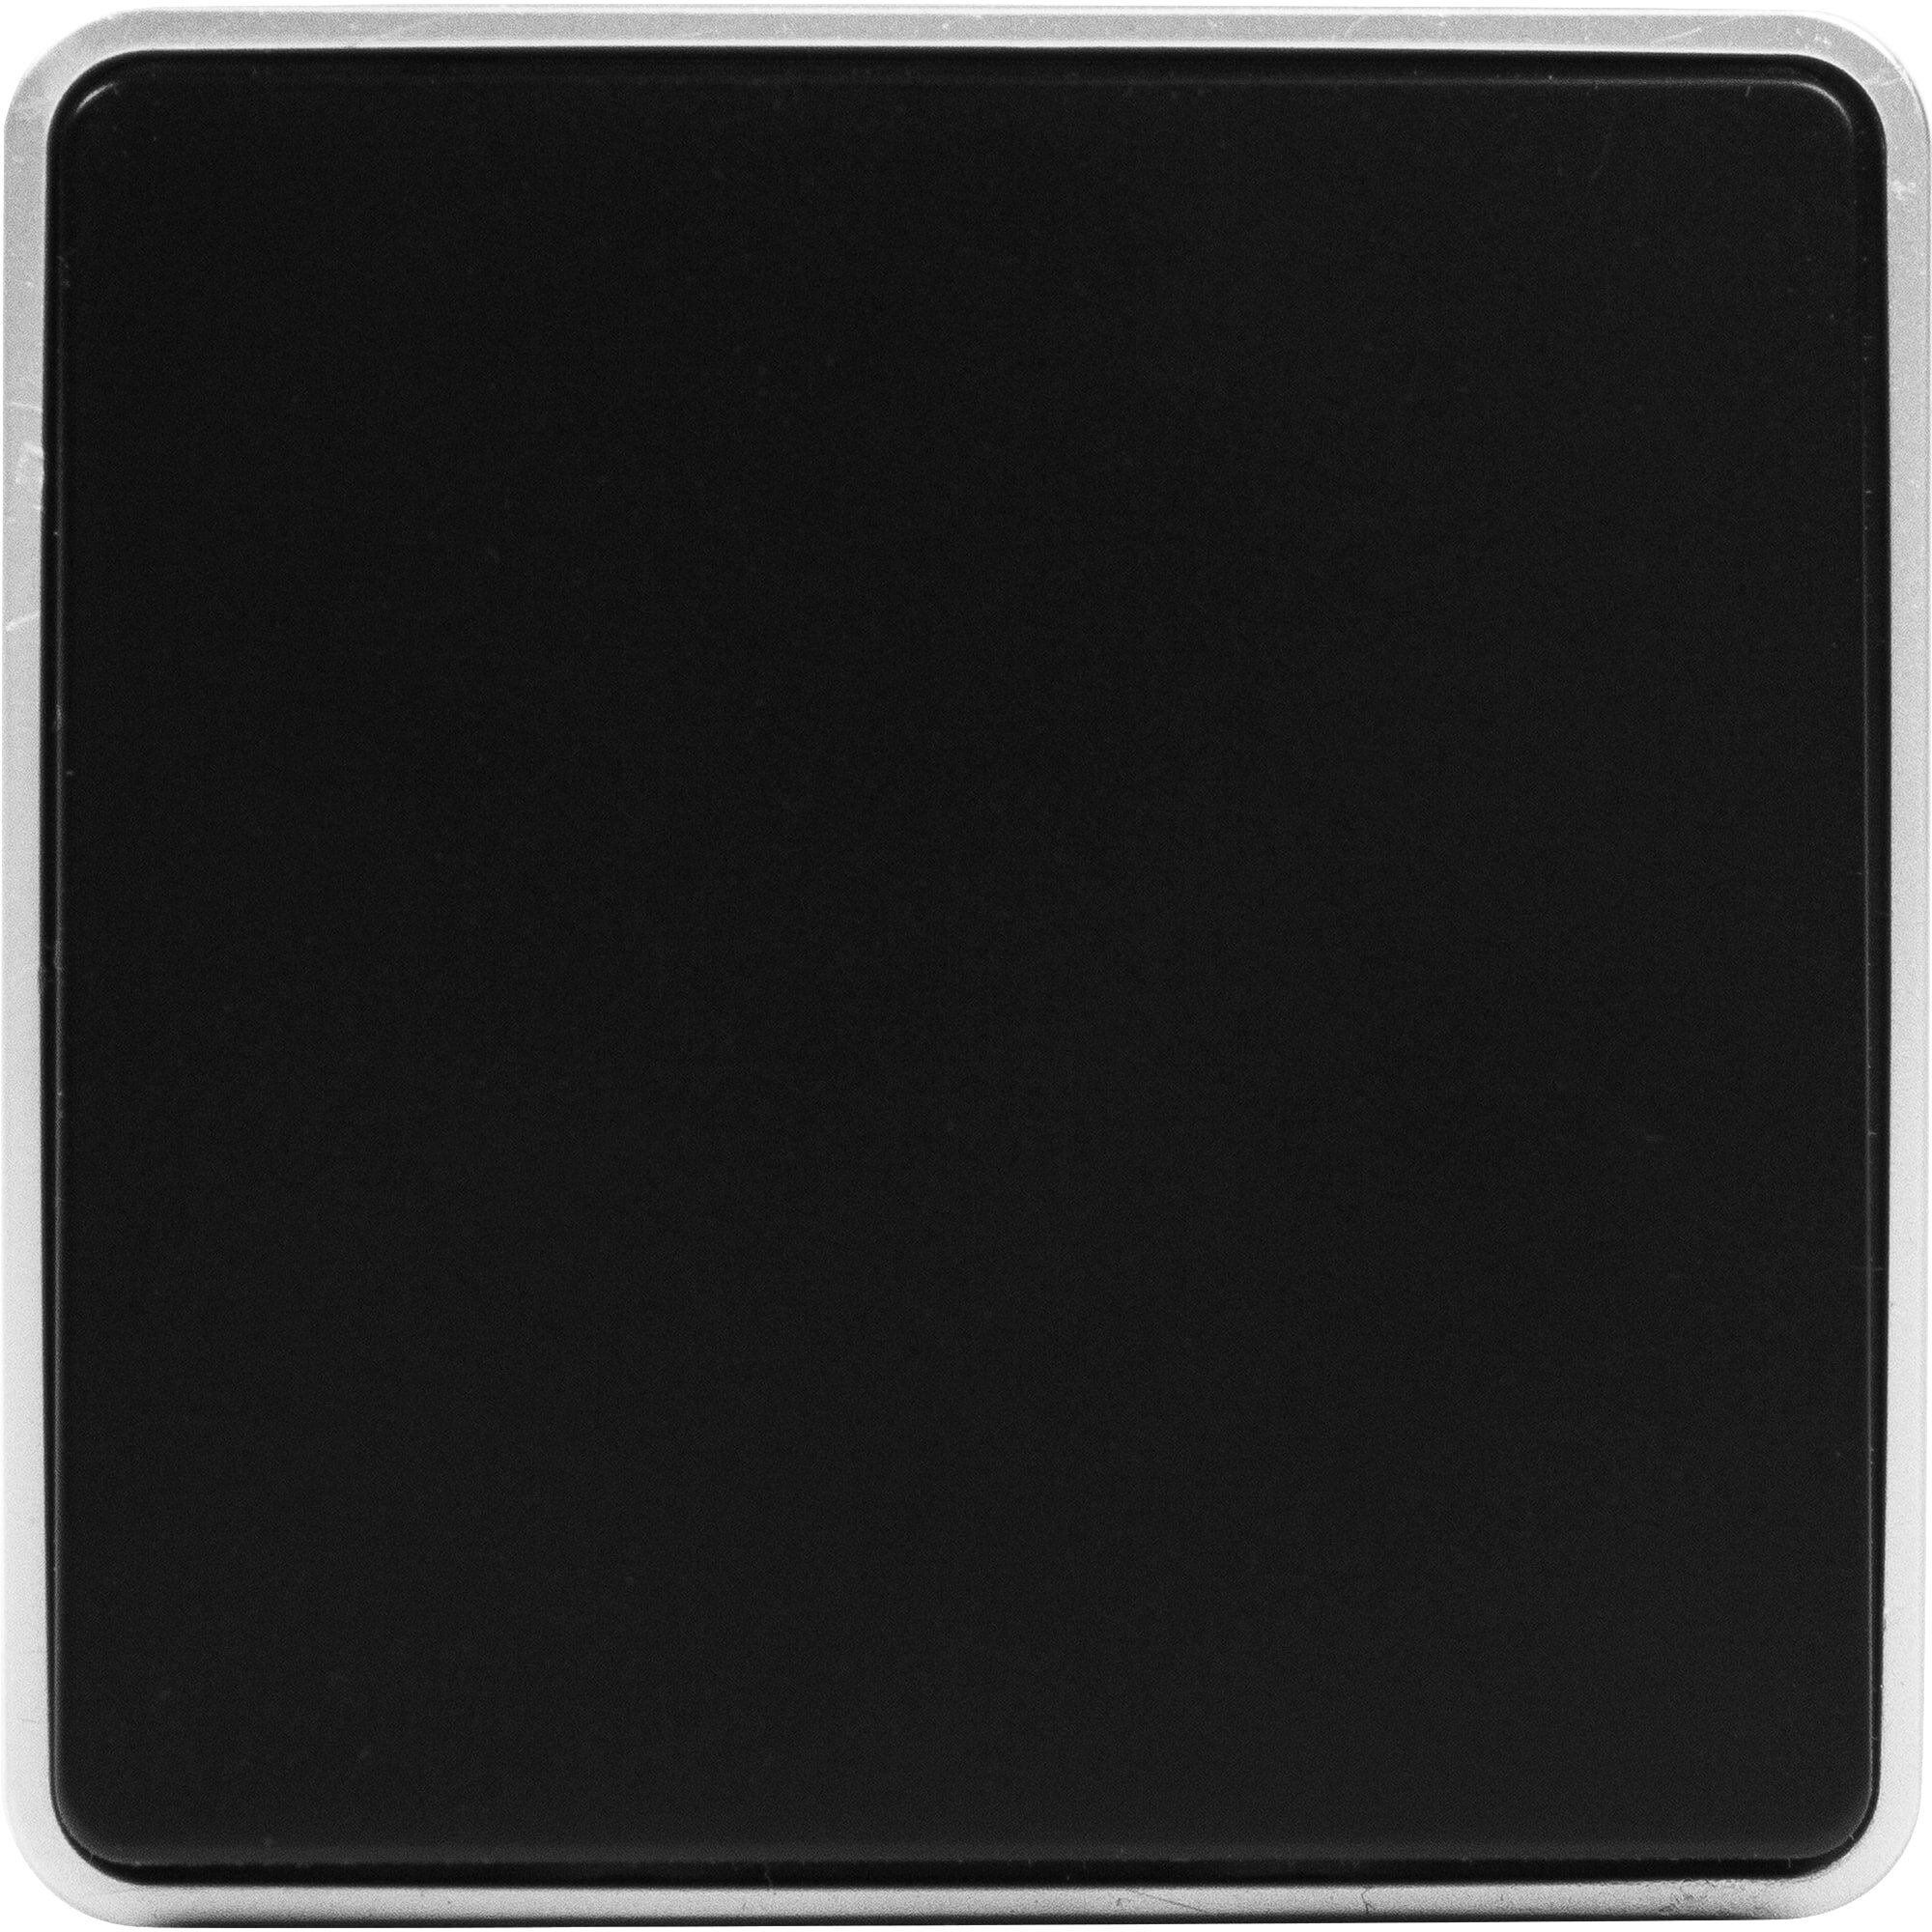 Выключатель накладной Werkel Gallant 1 клавиша цвет чёрный с серебром